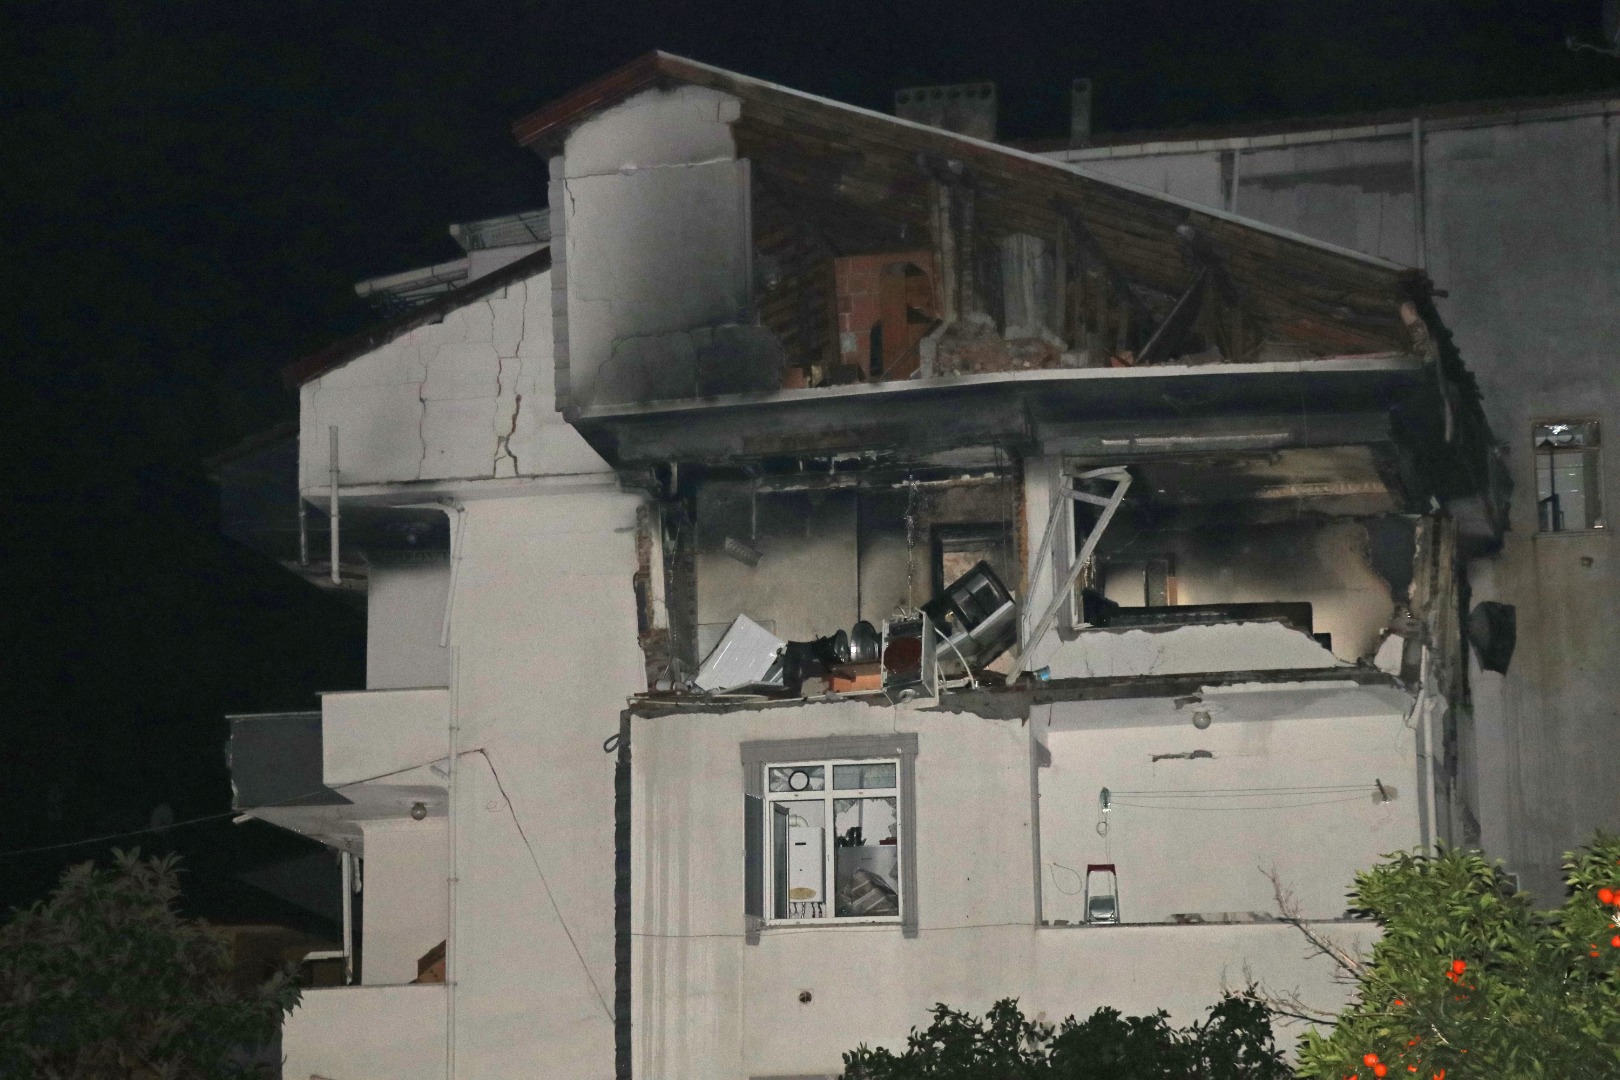 Kocaeli'de korkunç patlama! 2'si ağır 5 kişi yaralandı